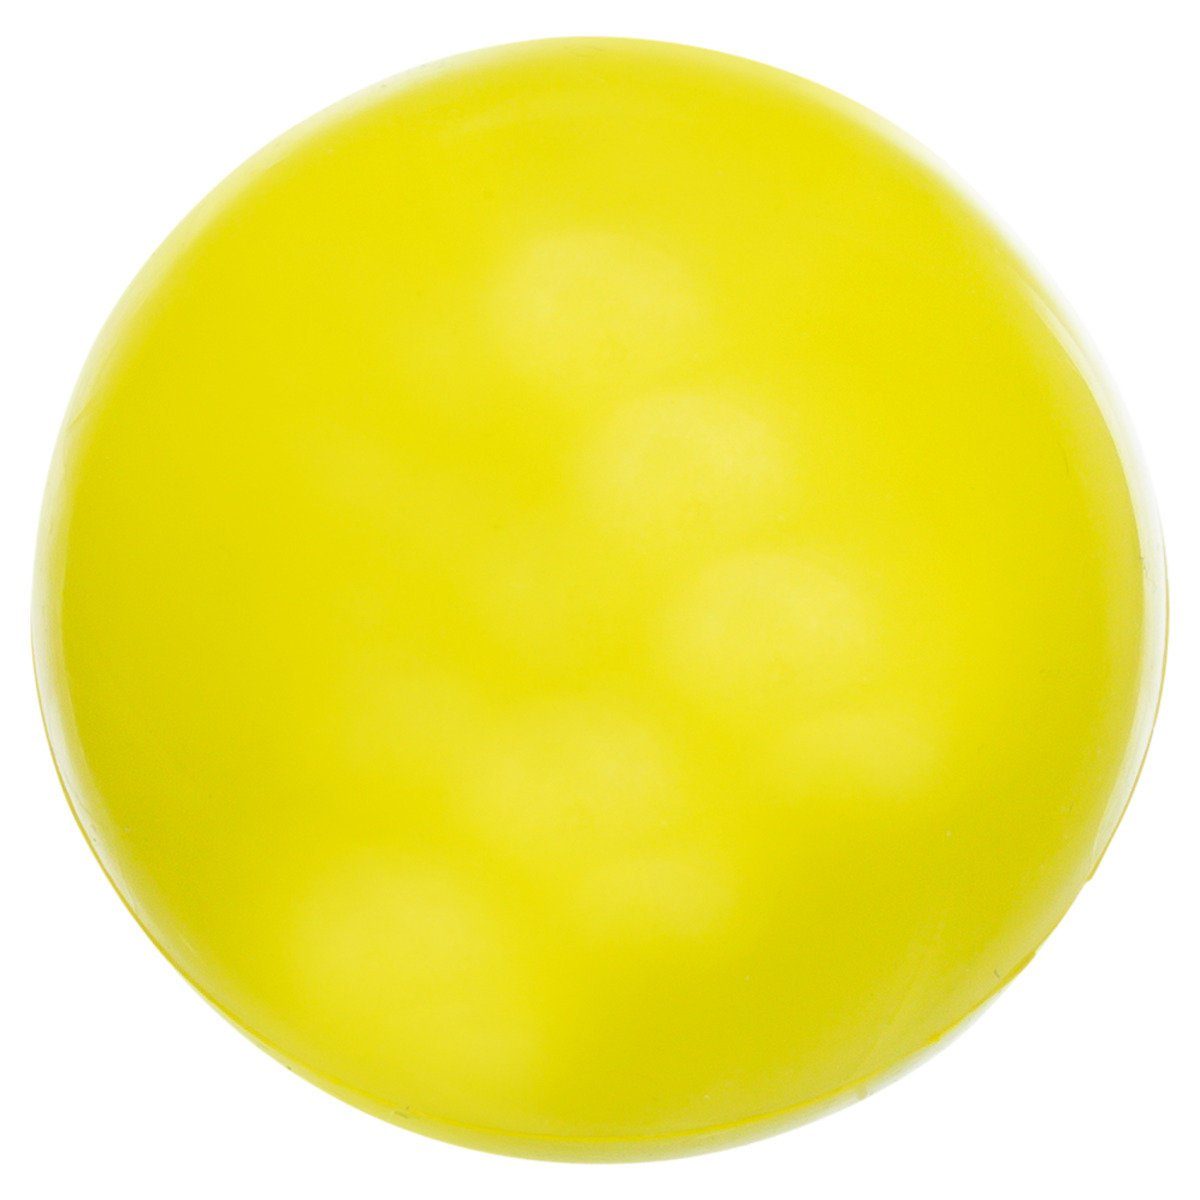 TRIXIE Spielknochen Hundespielzeug Ball, geräuschlos, Durchmesser: 5 cm / Farbe: lime